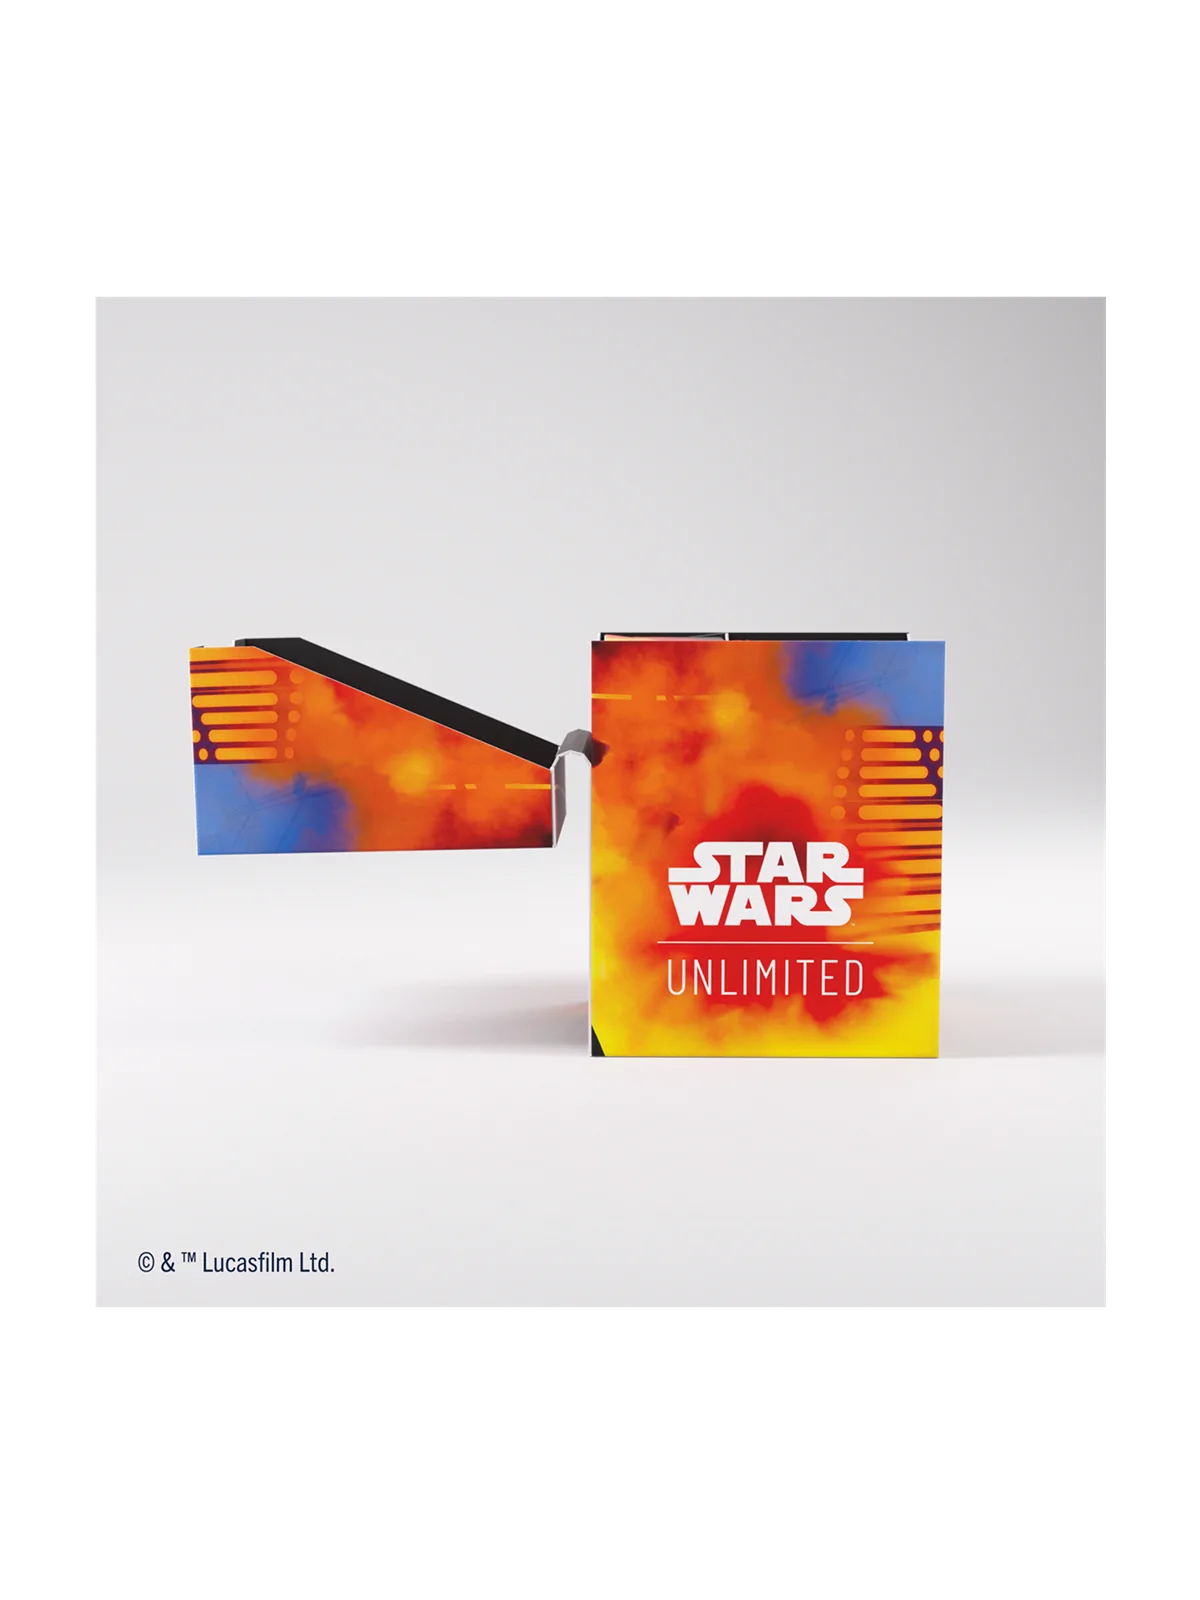 Comprar Star Wars Unlimited: Soft Crate Luke/Vader barato al mejor pre